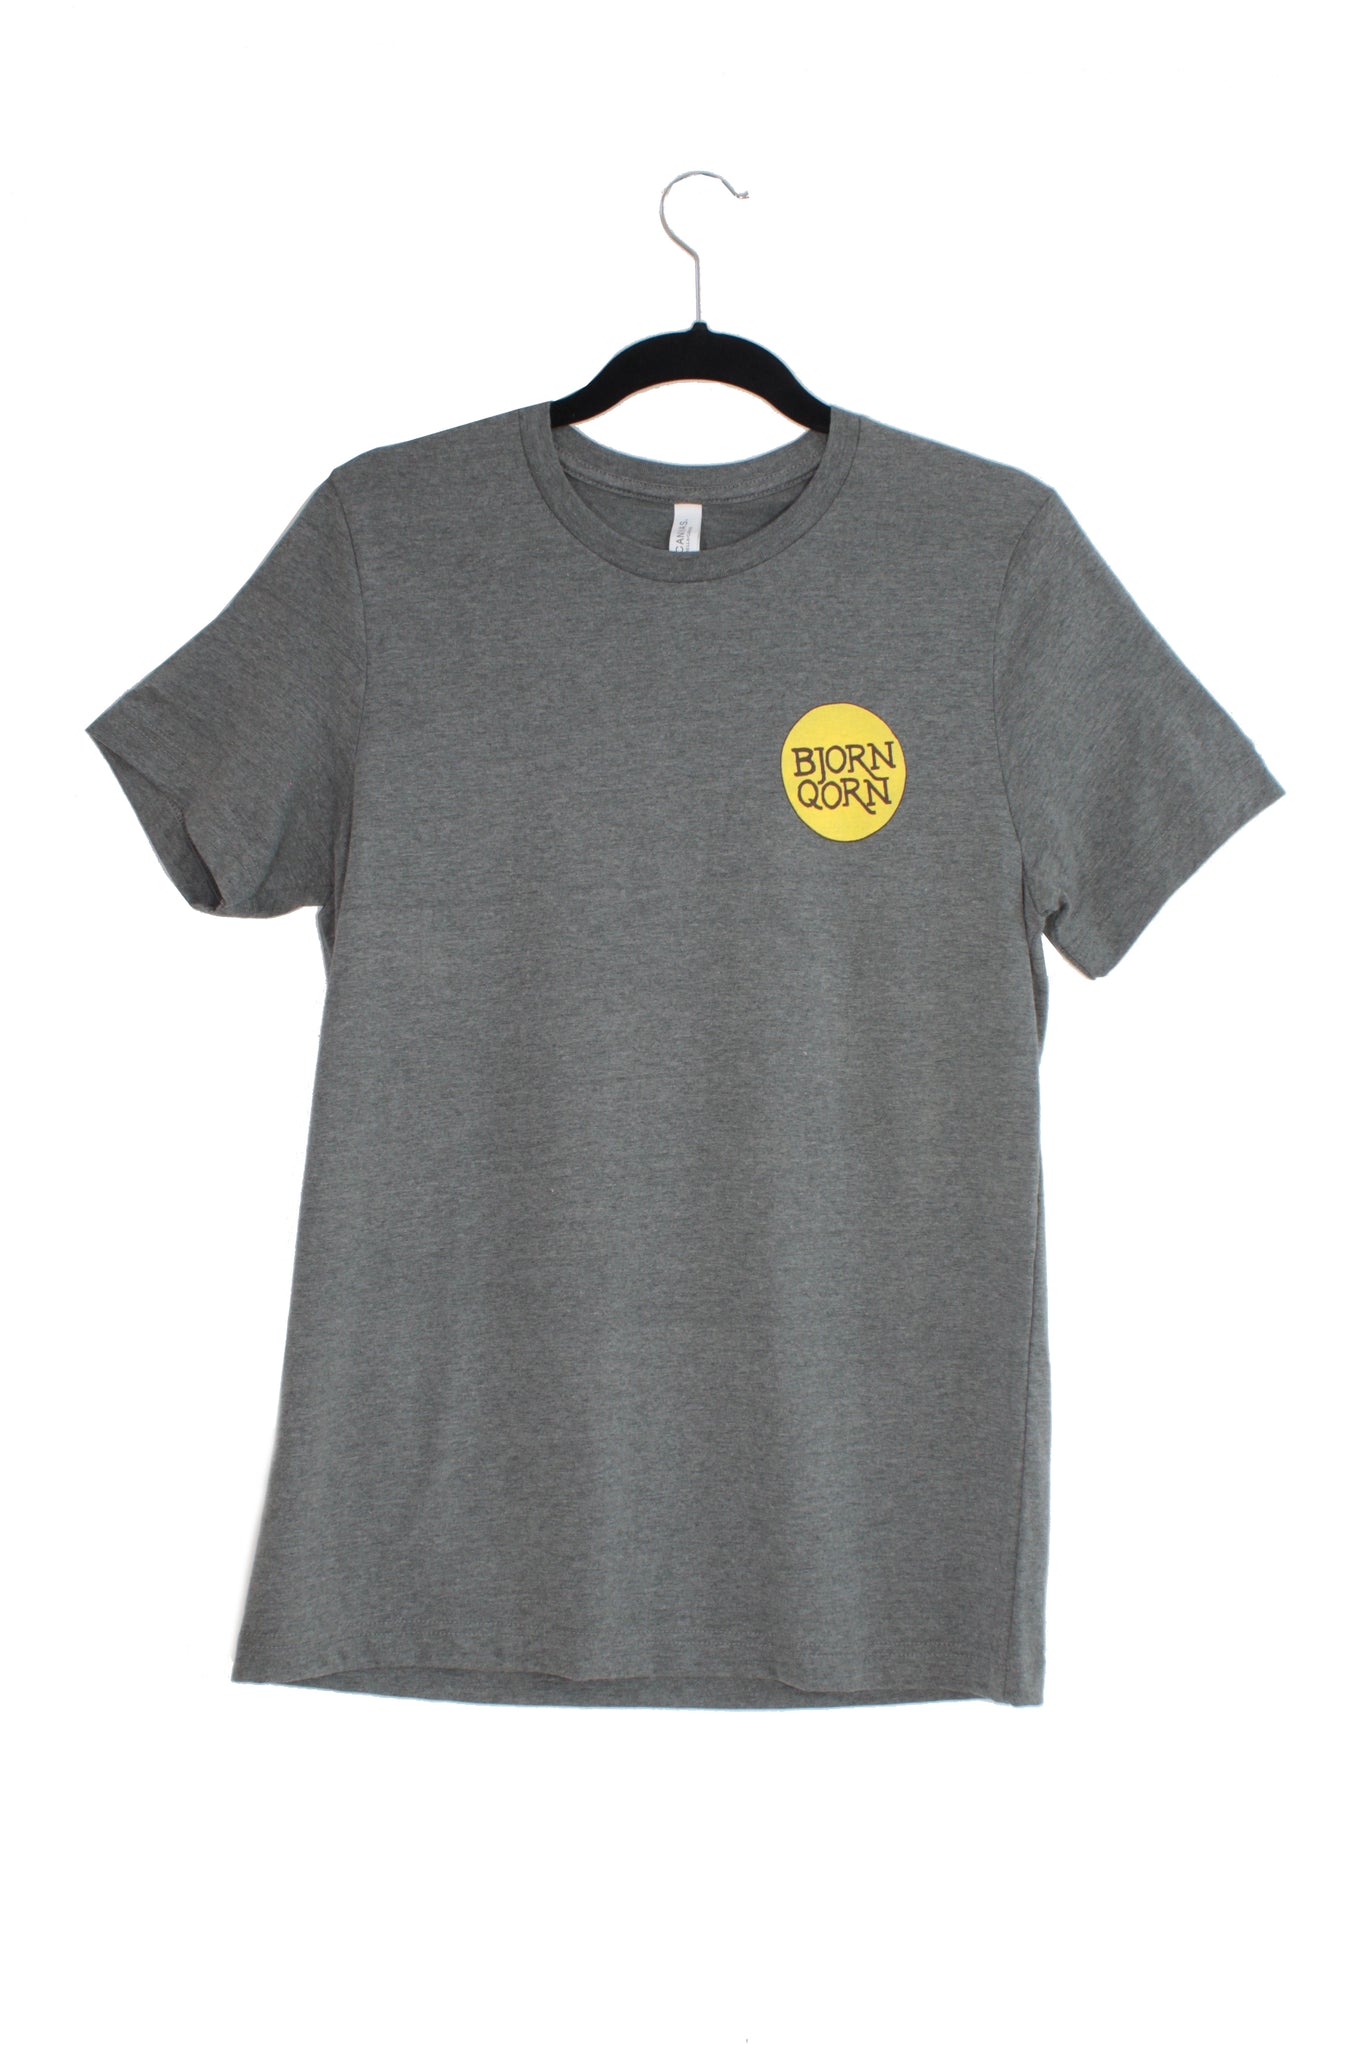 Bjorn Qorn grey T-shirt on clothes hanger. 